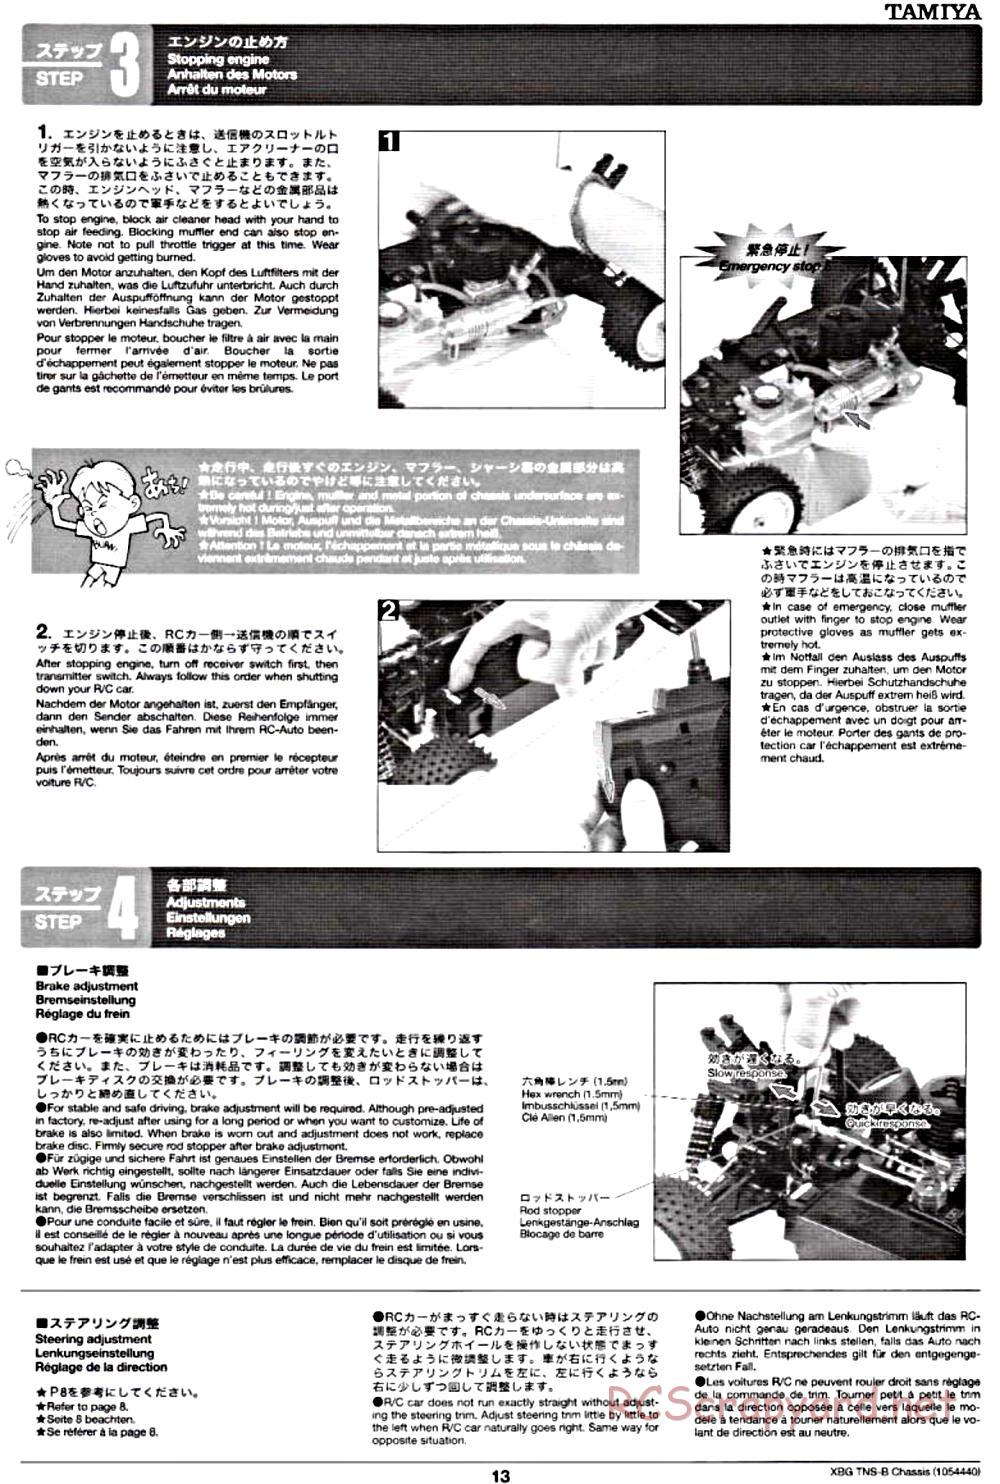 Tamiya - TNS-B Chassis - Manual - Page 13